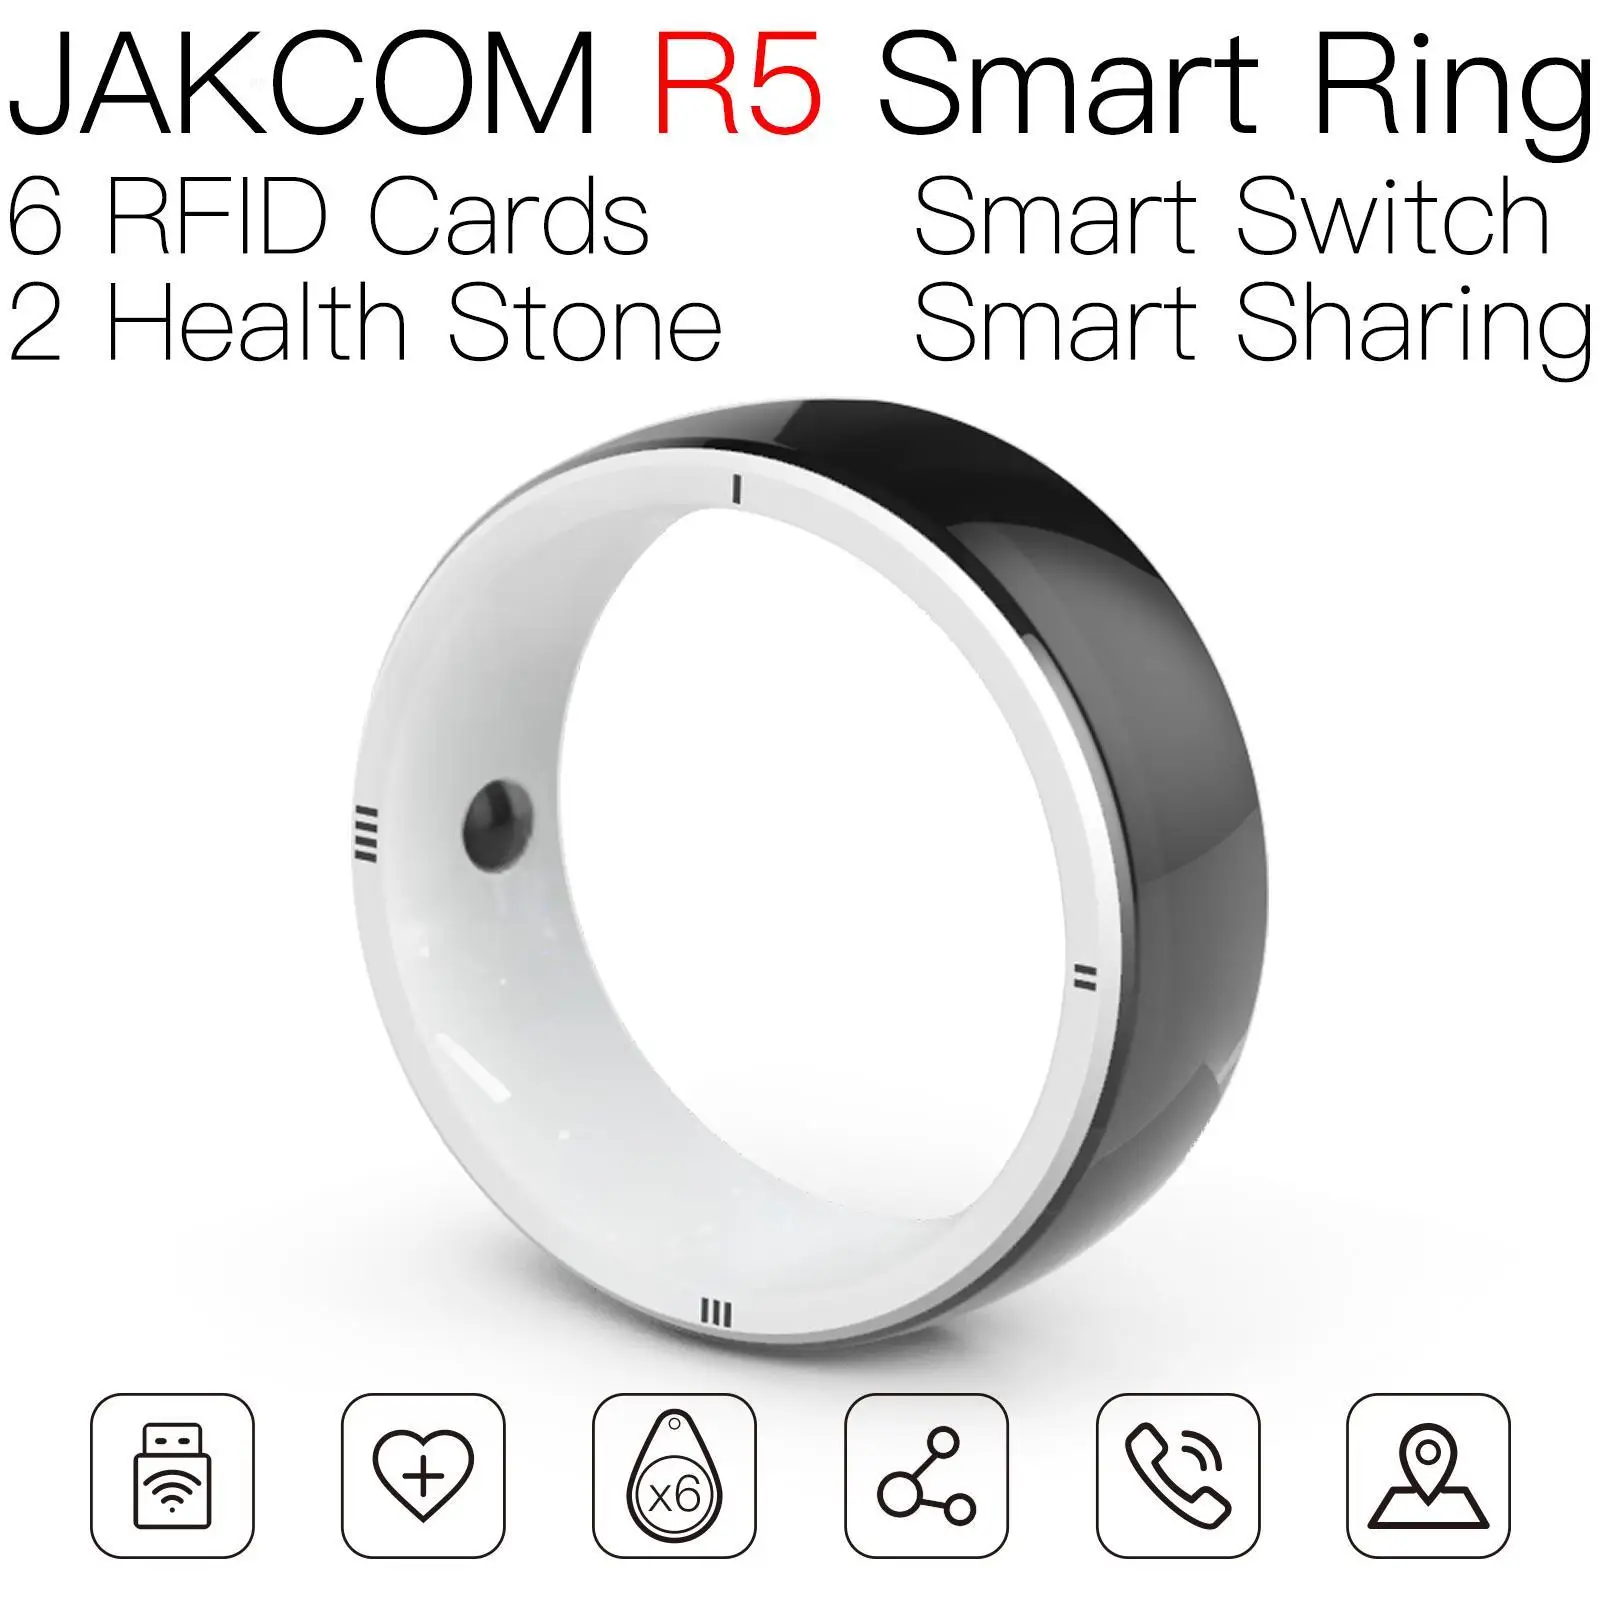 

Смарт-кольцо JAKCOM R5, новее, чем значки, rfid, urmet, carte, новый horizon 73, антенна, бирки для коктейля, двойная бирка, мобильный телефон, лампа, животное